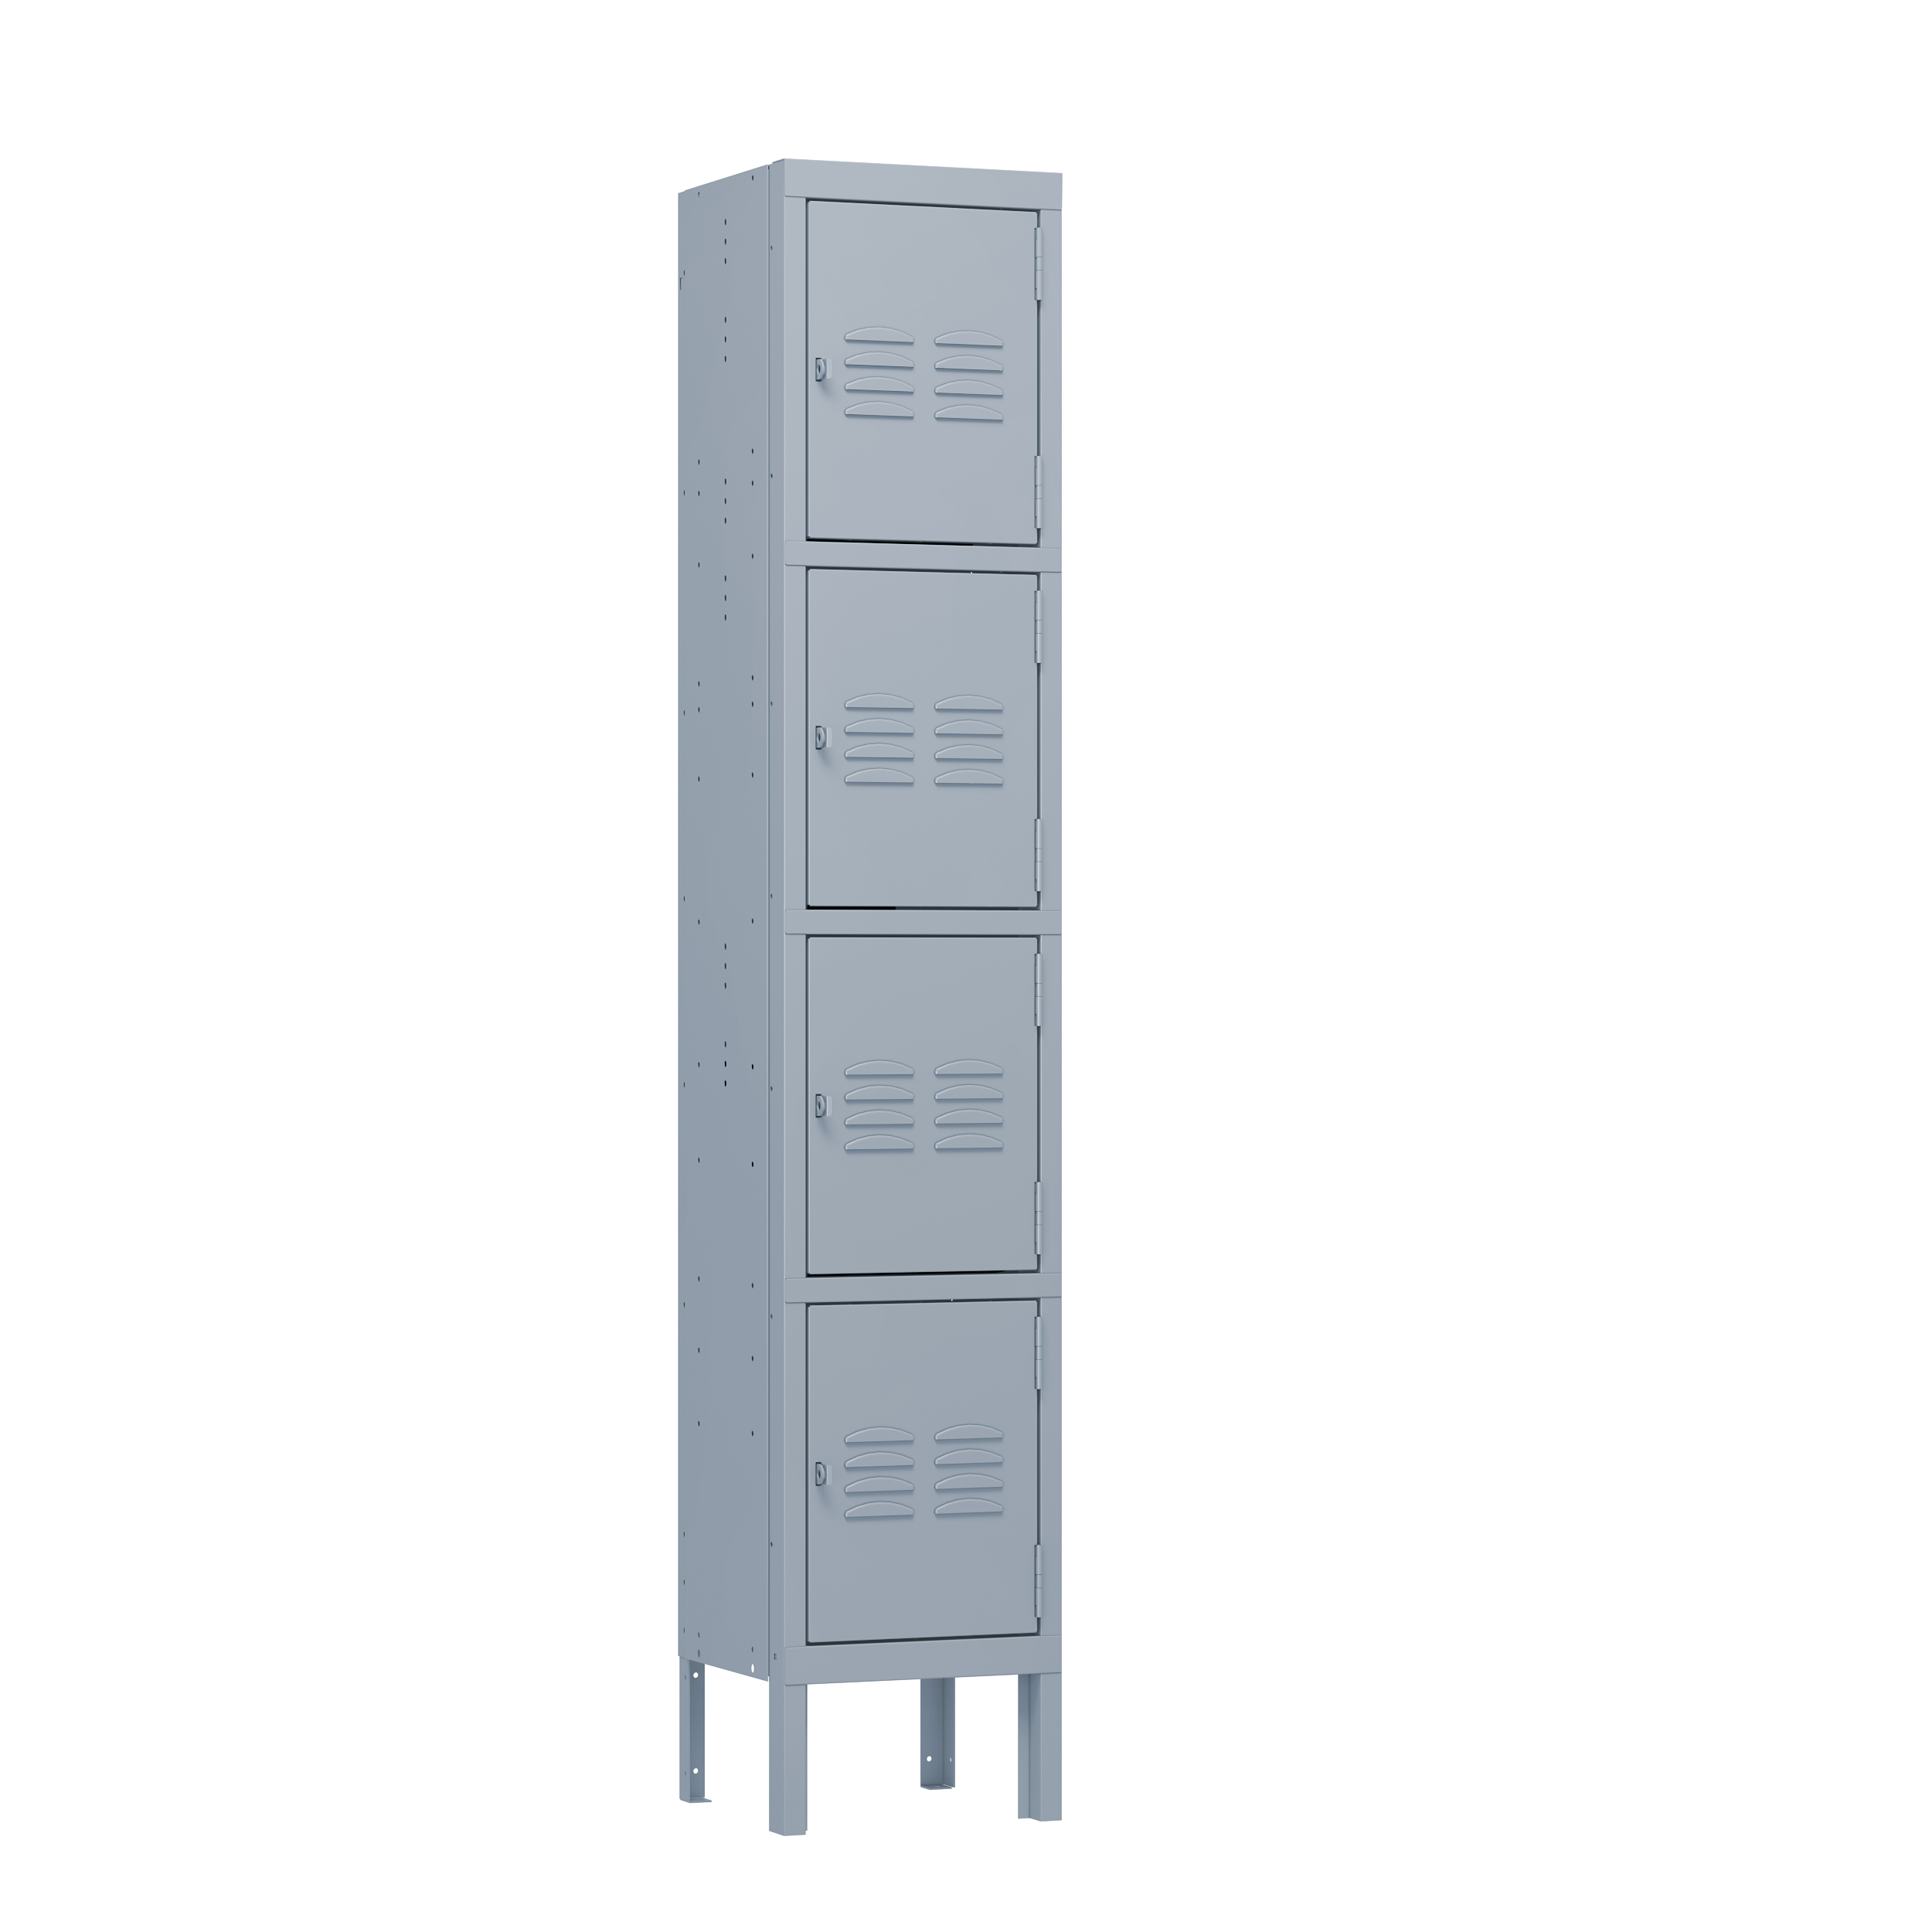 Four door single metal locker